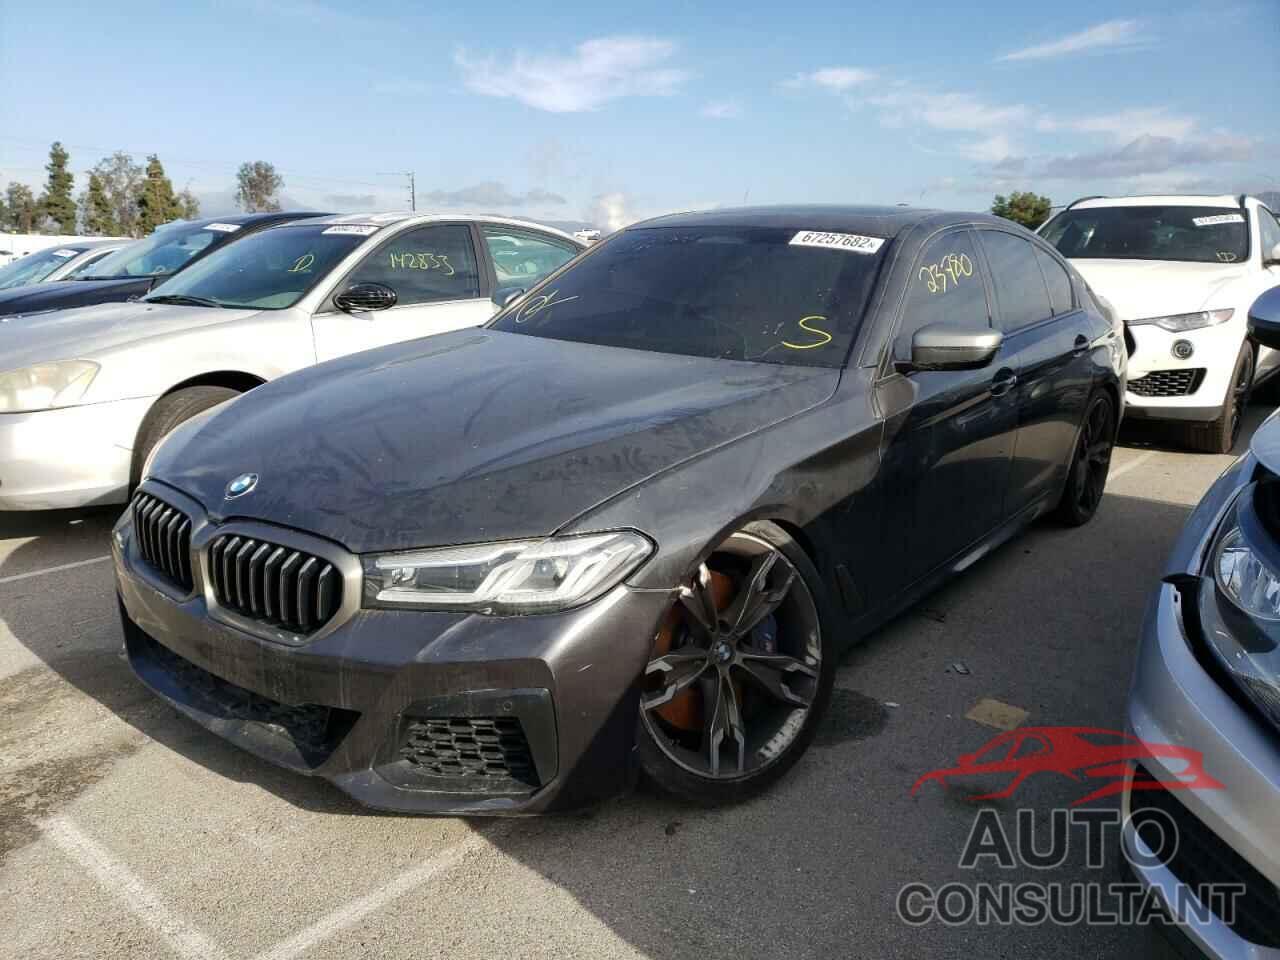 BMW M5 2021 - WBA13BK0XMCF06721